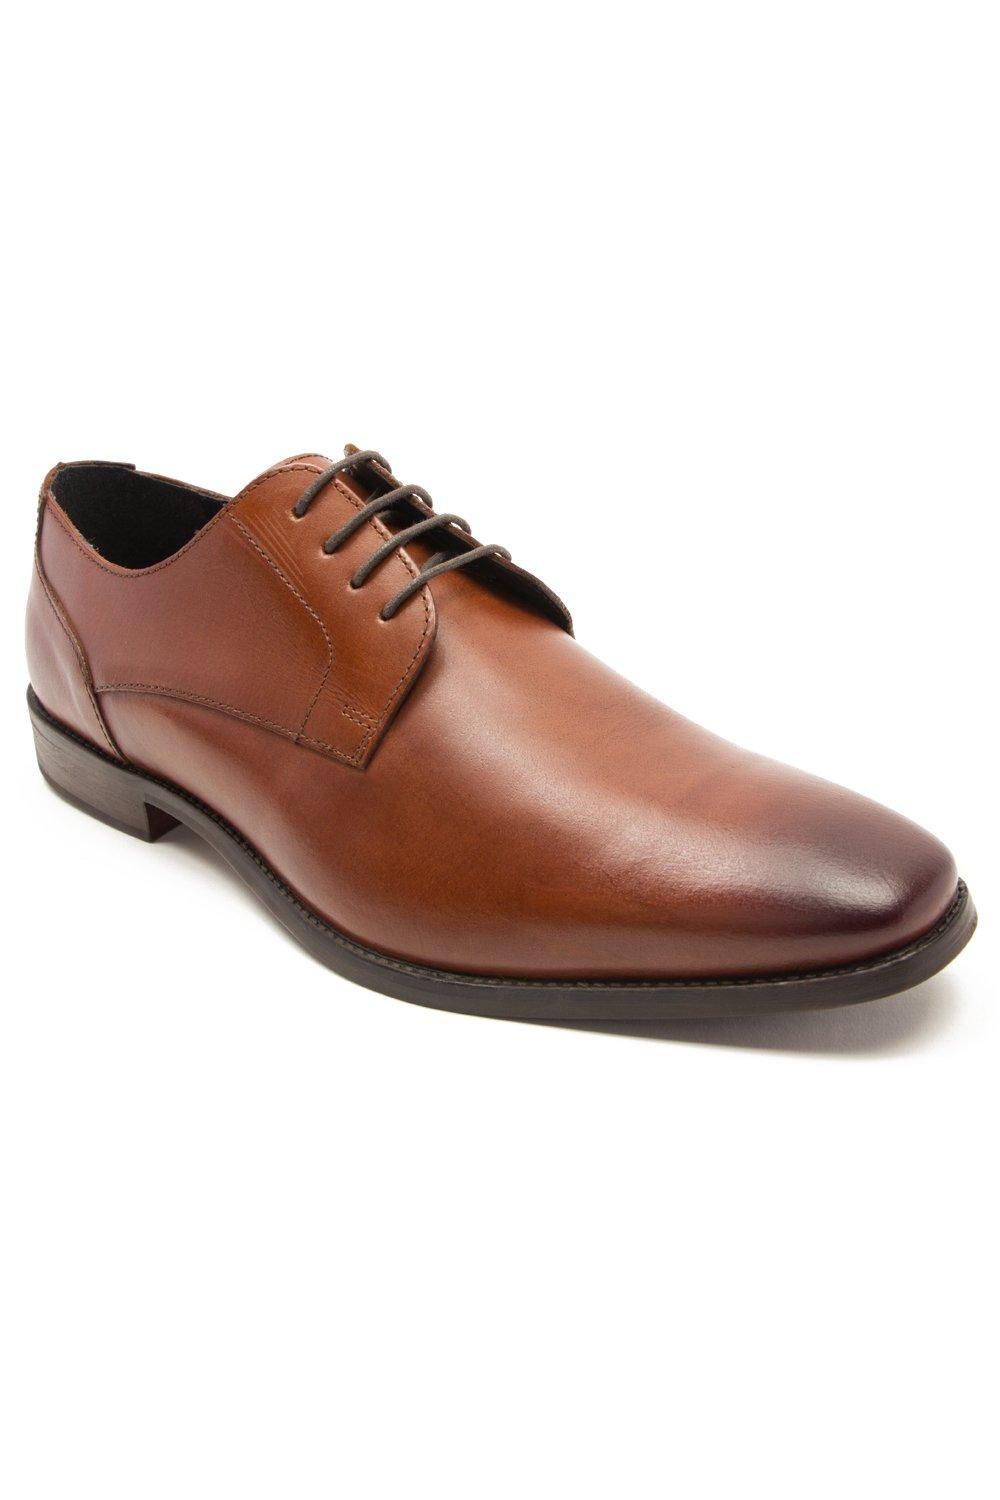 Формальные кожаные туфли дерби на шнуровке 'Falcon' Thomas Crick, коричневый роскошные черные кожаные мужские туфли для свадьбы деловые оксфорды деловые повседневные офисные туфли для работы классические туфли бе